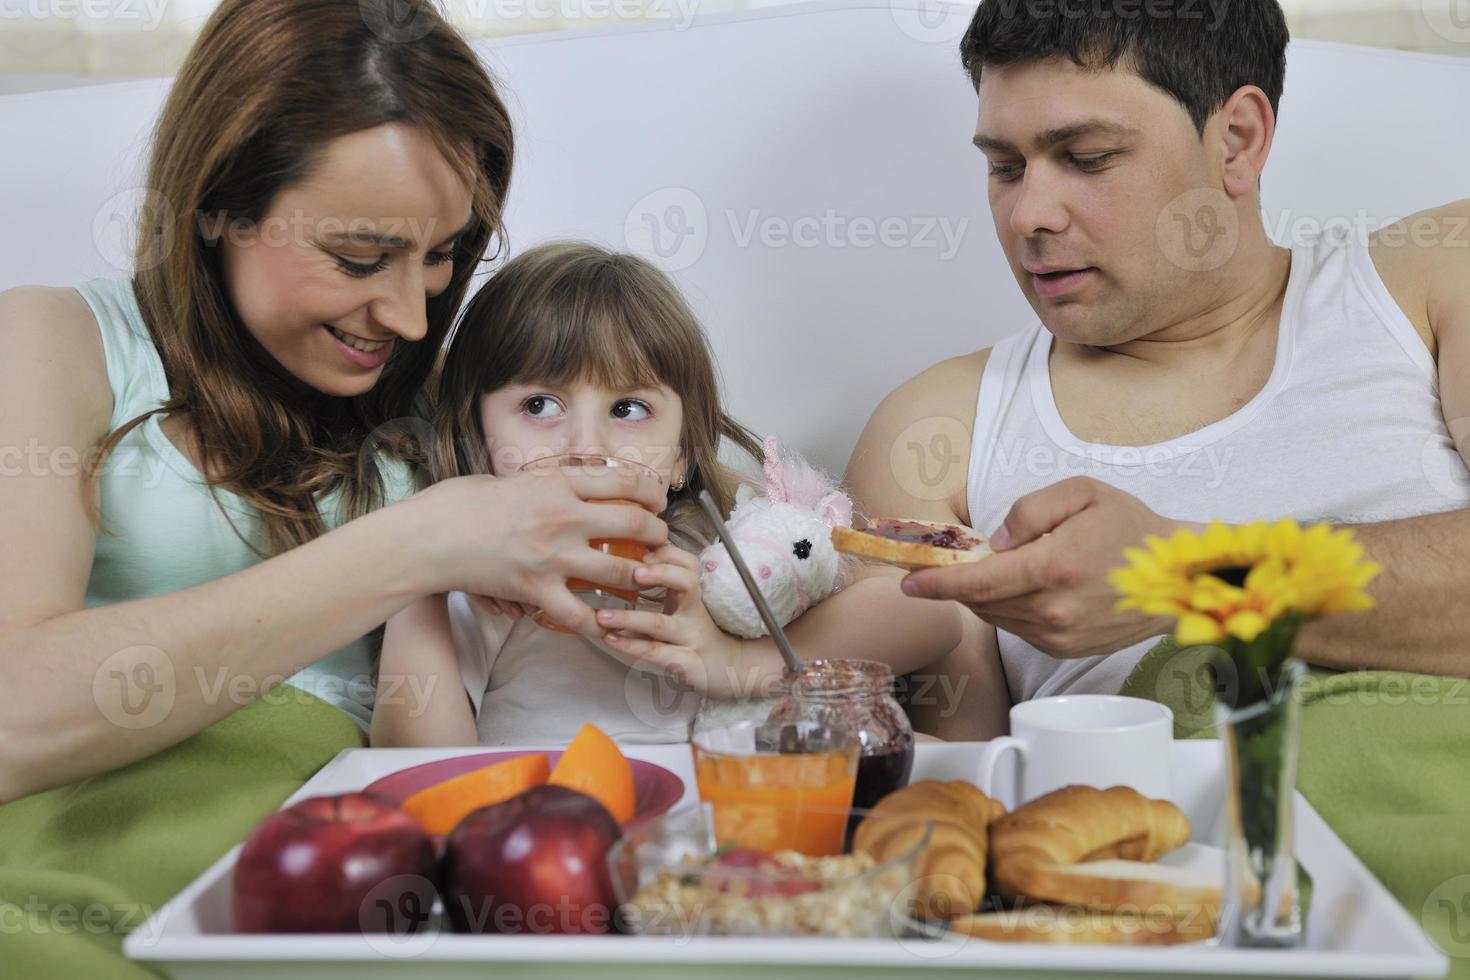 contento giovane famiglia mangiare prima colazione nel letto foto